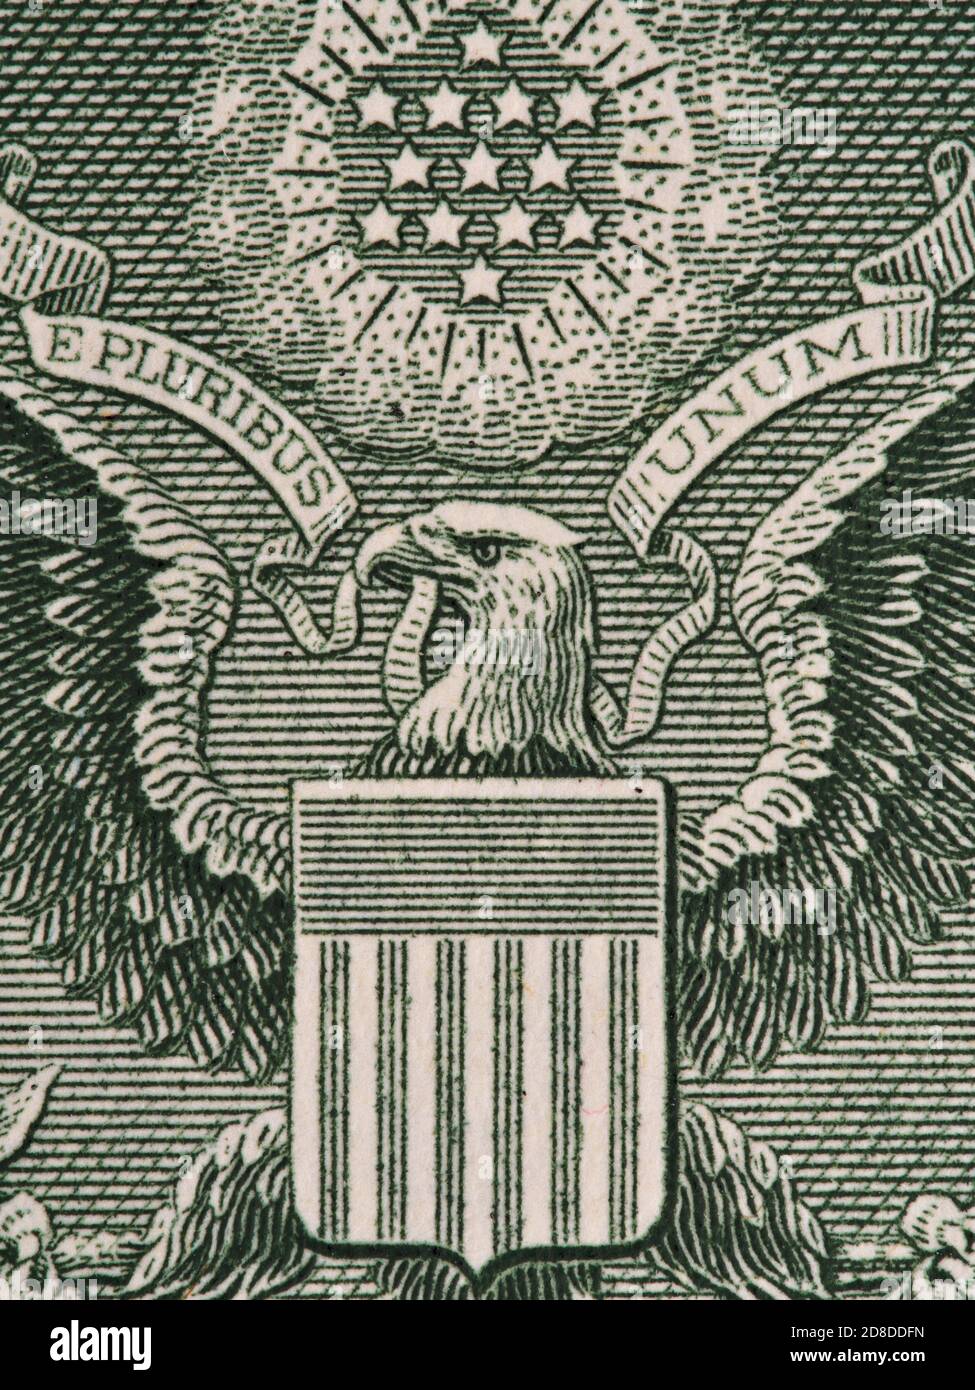 Rückseite des US-Dollar-Bill extrem Makro, 1 usd Banknote, großes Siegel, vereinigte Staaten Geld Nahaufnahme Stockfoto